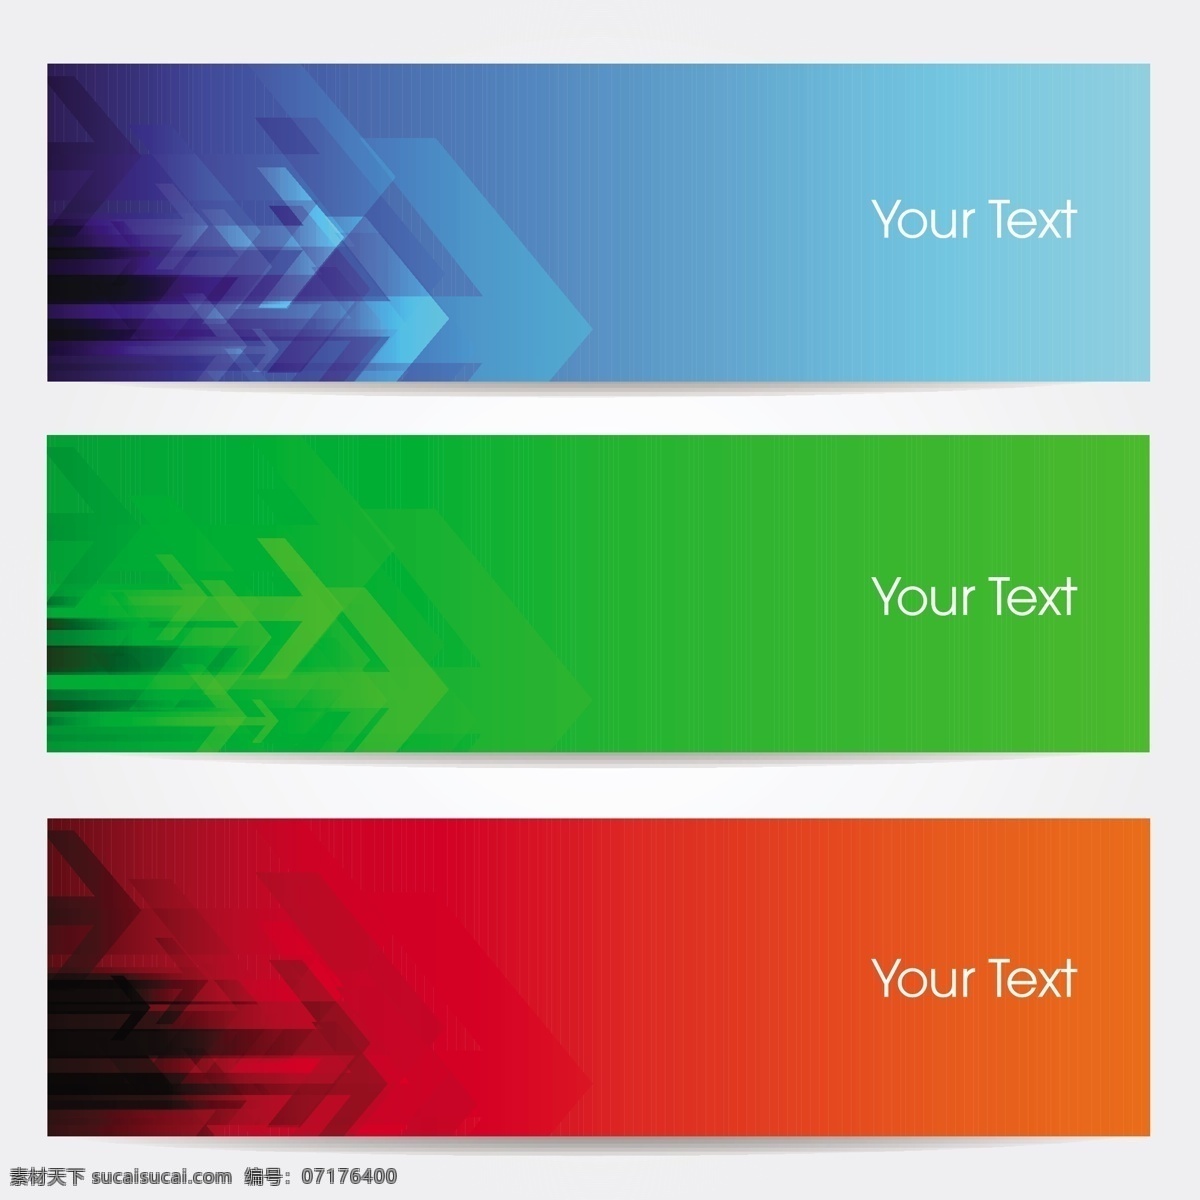 彩色横幅广告 网站标题 绿色 插图 广告 矢量素材 箭头 简约 白色